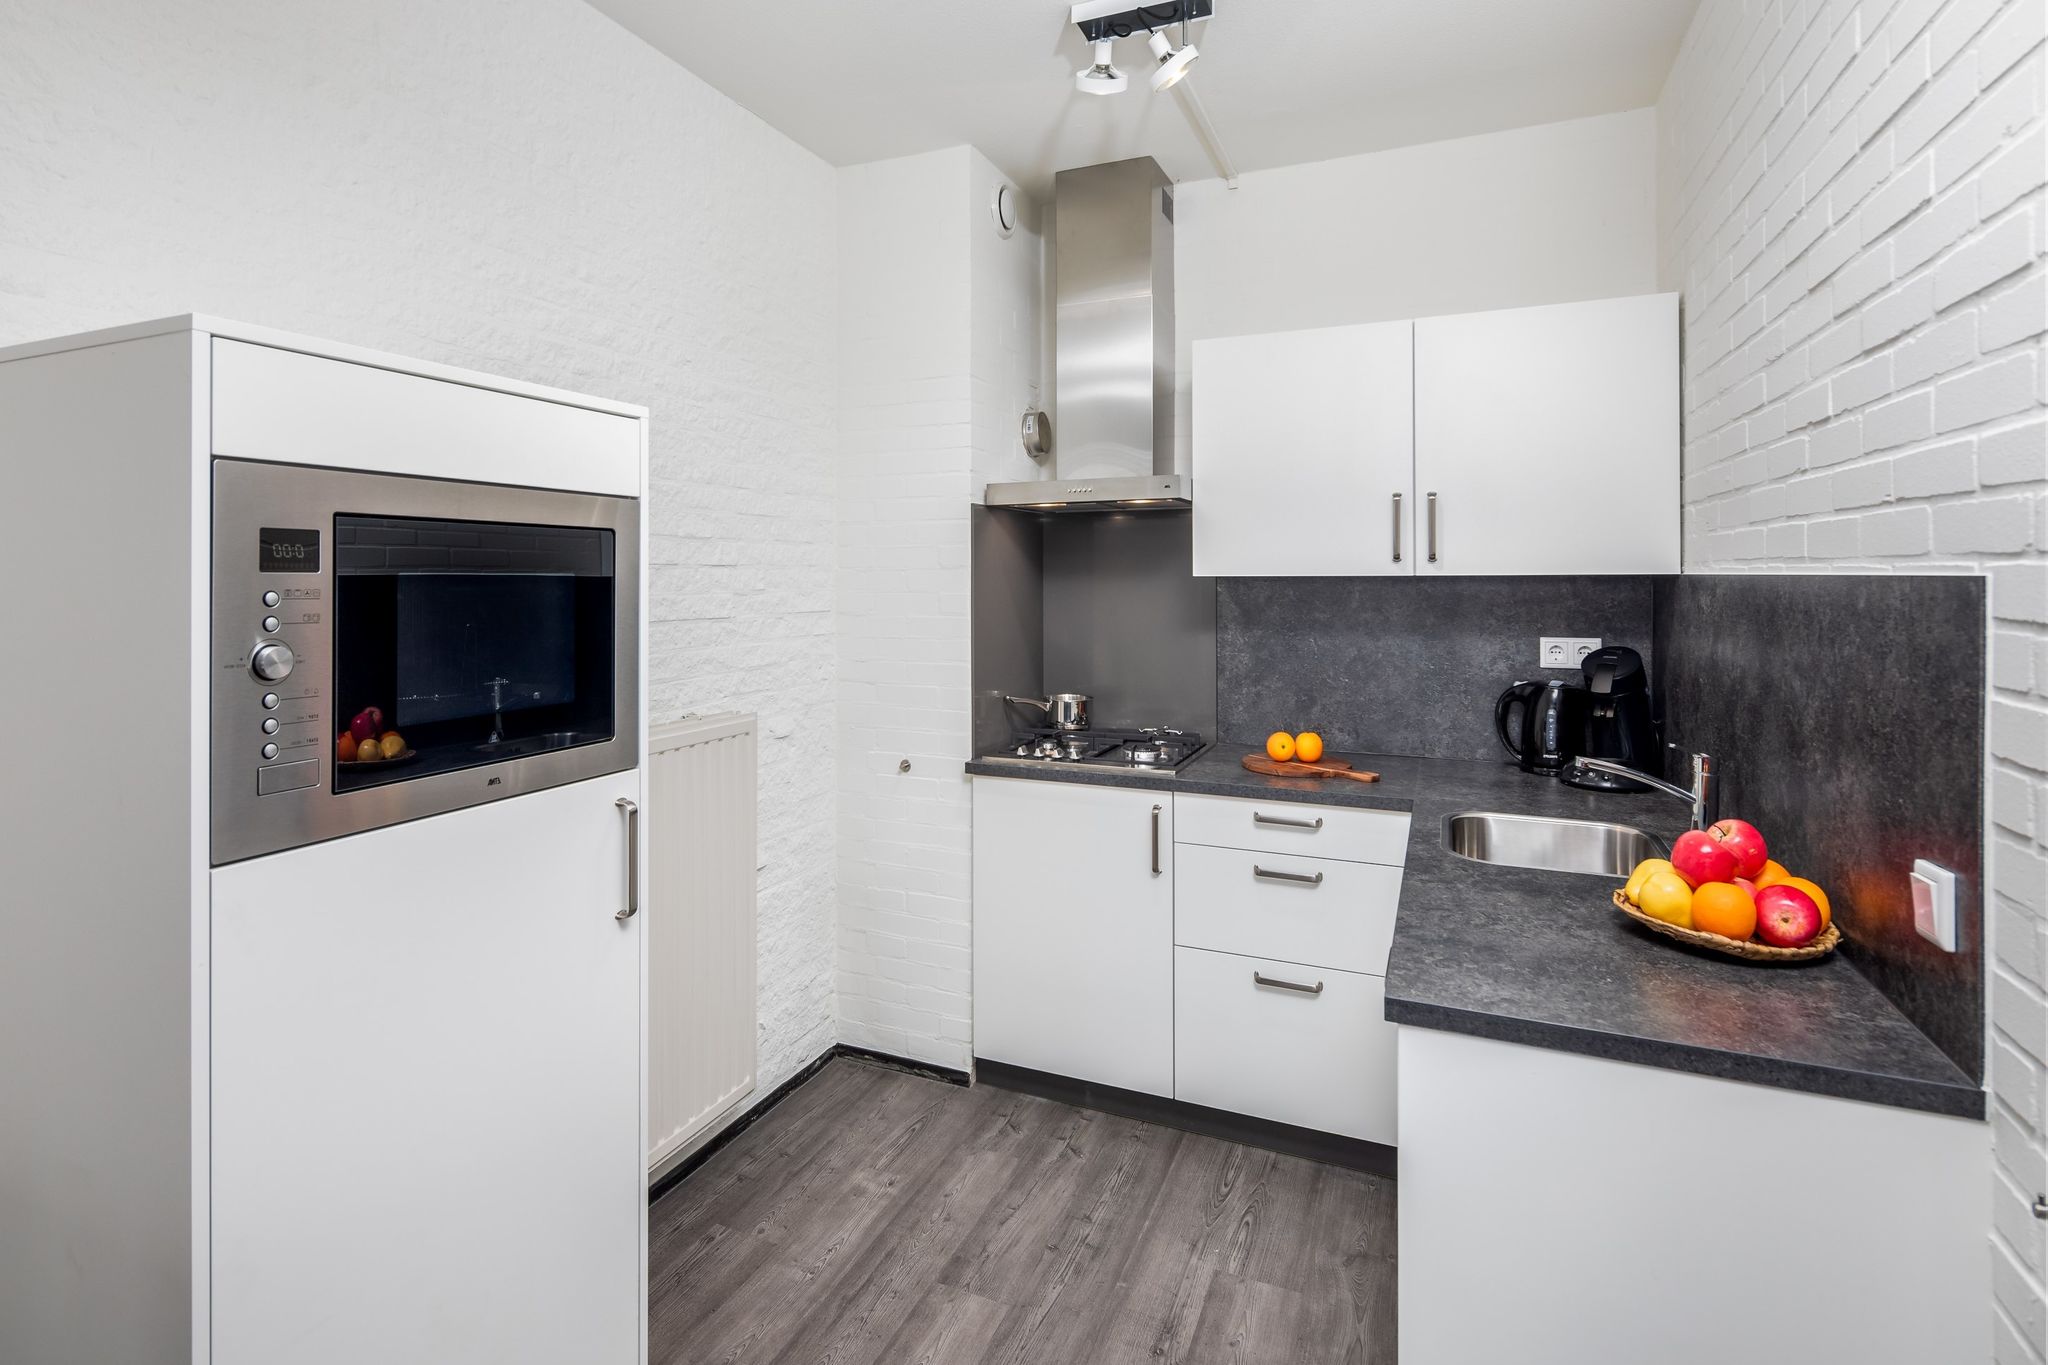 Gerestyld appartement met afwasmachine bij Grevelingenmeer